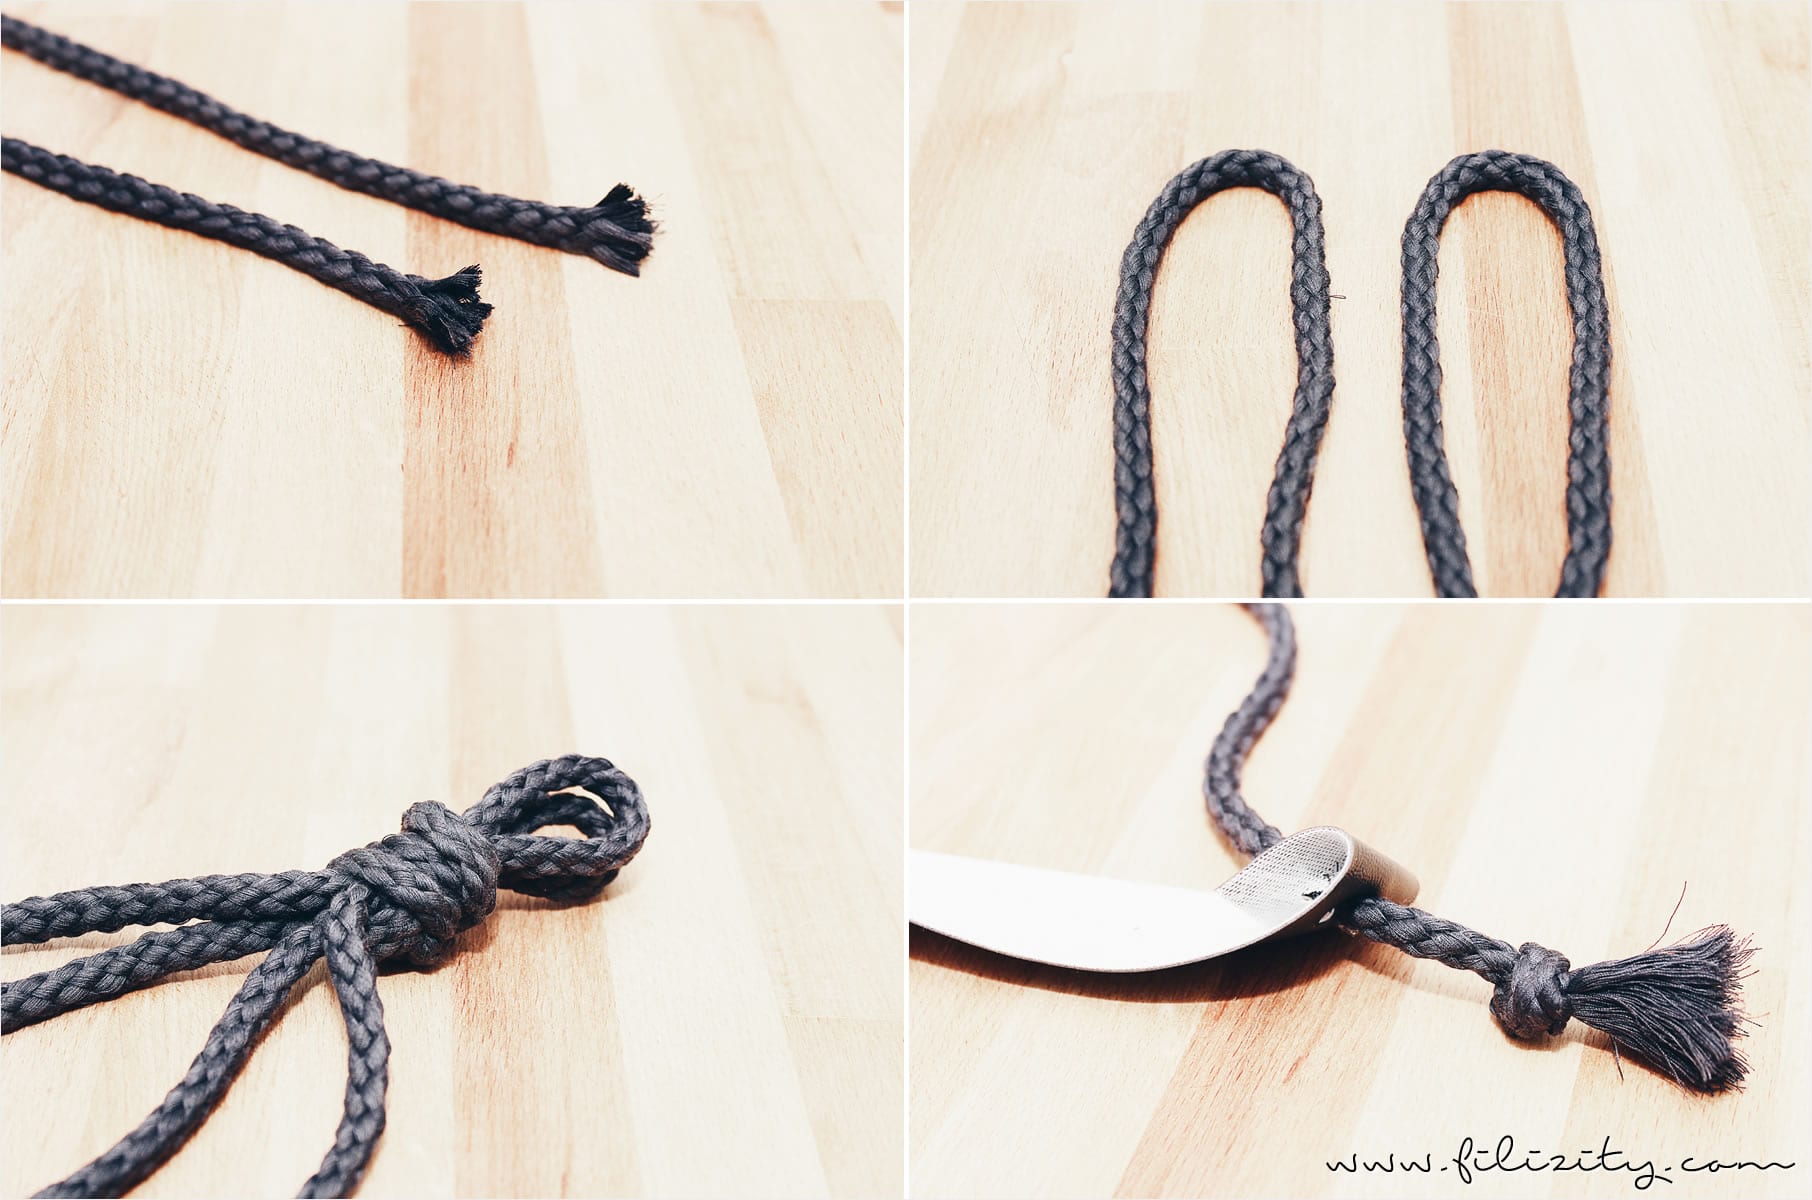 Wohntrend: Hänge-Deko | Holzregal mit Seil und Leder